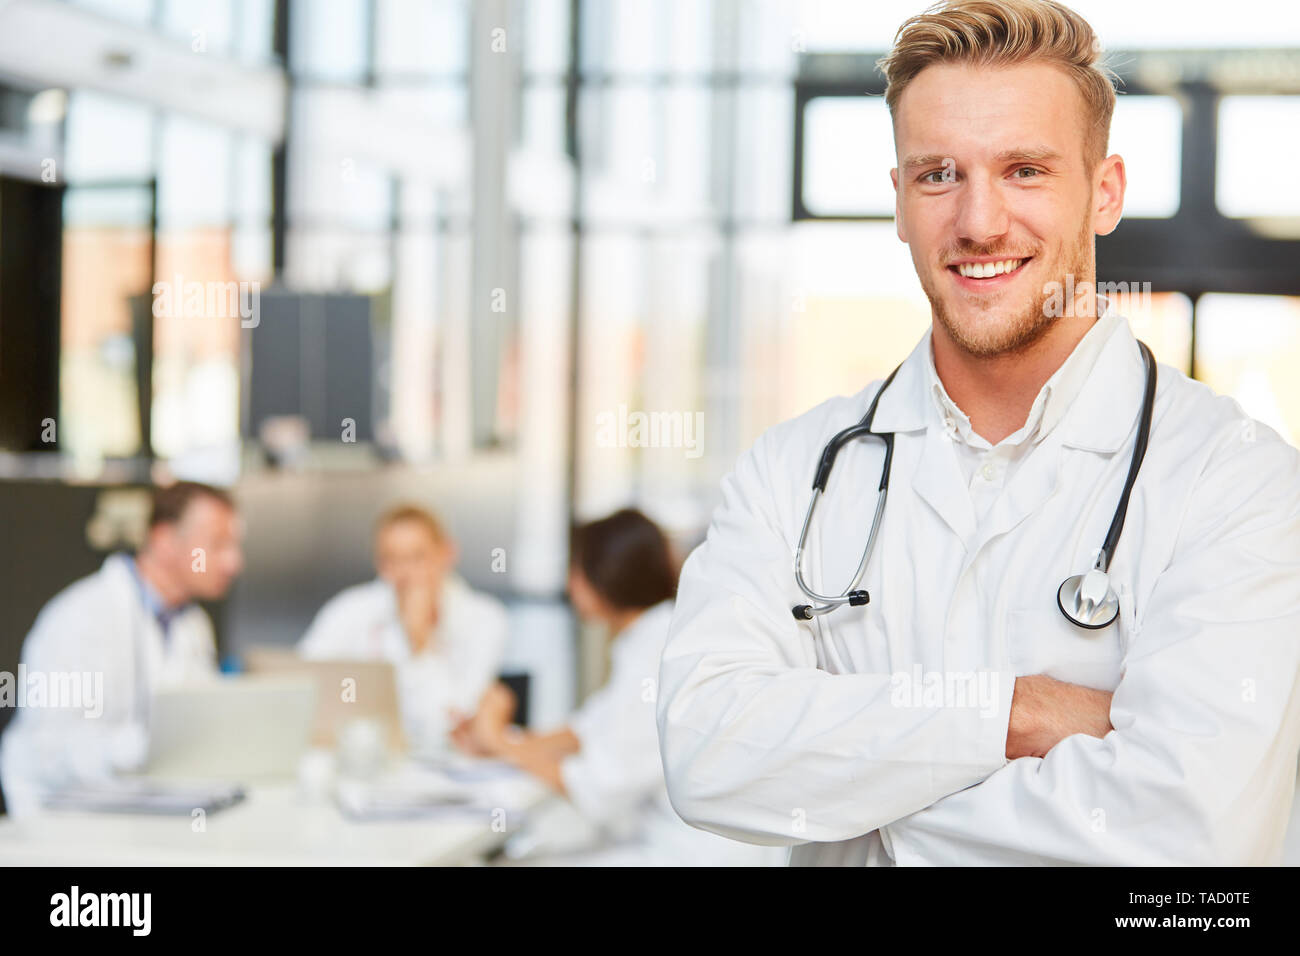 Lächelnden jungen Spezialisten oder medizinischen Assistenten in einer Sitzung im Krankenhaus Stockfoto